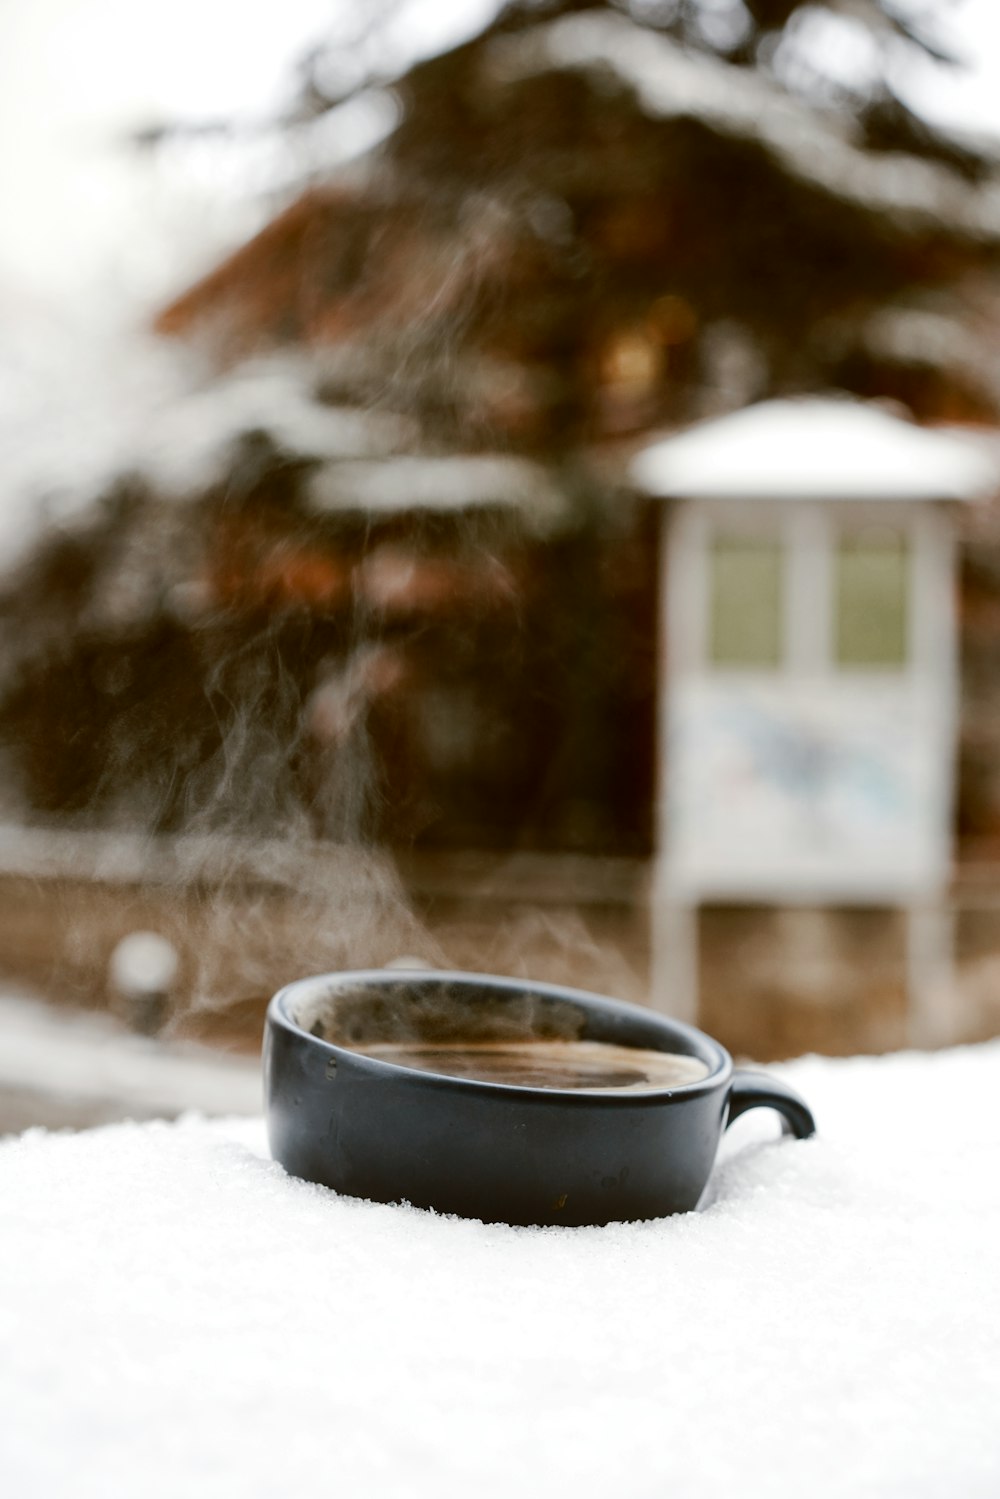 schwarzer Keramikbecher auf schneebedecktem Boden